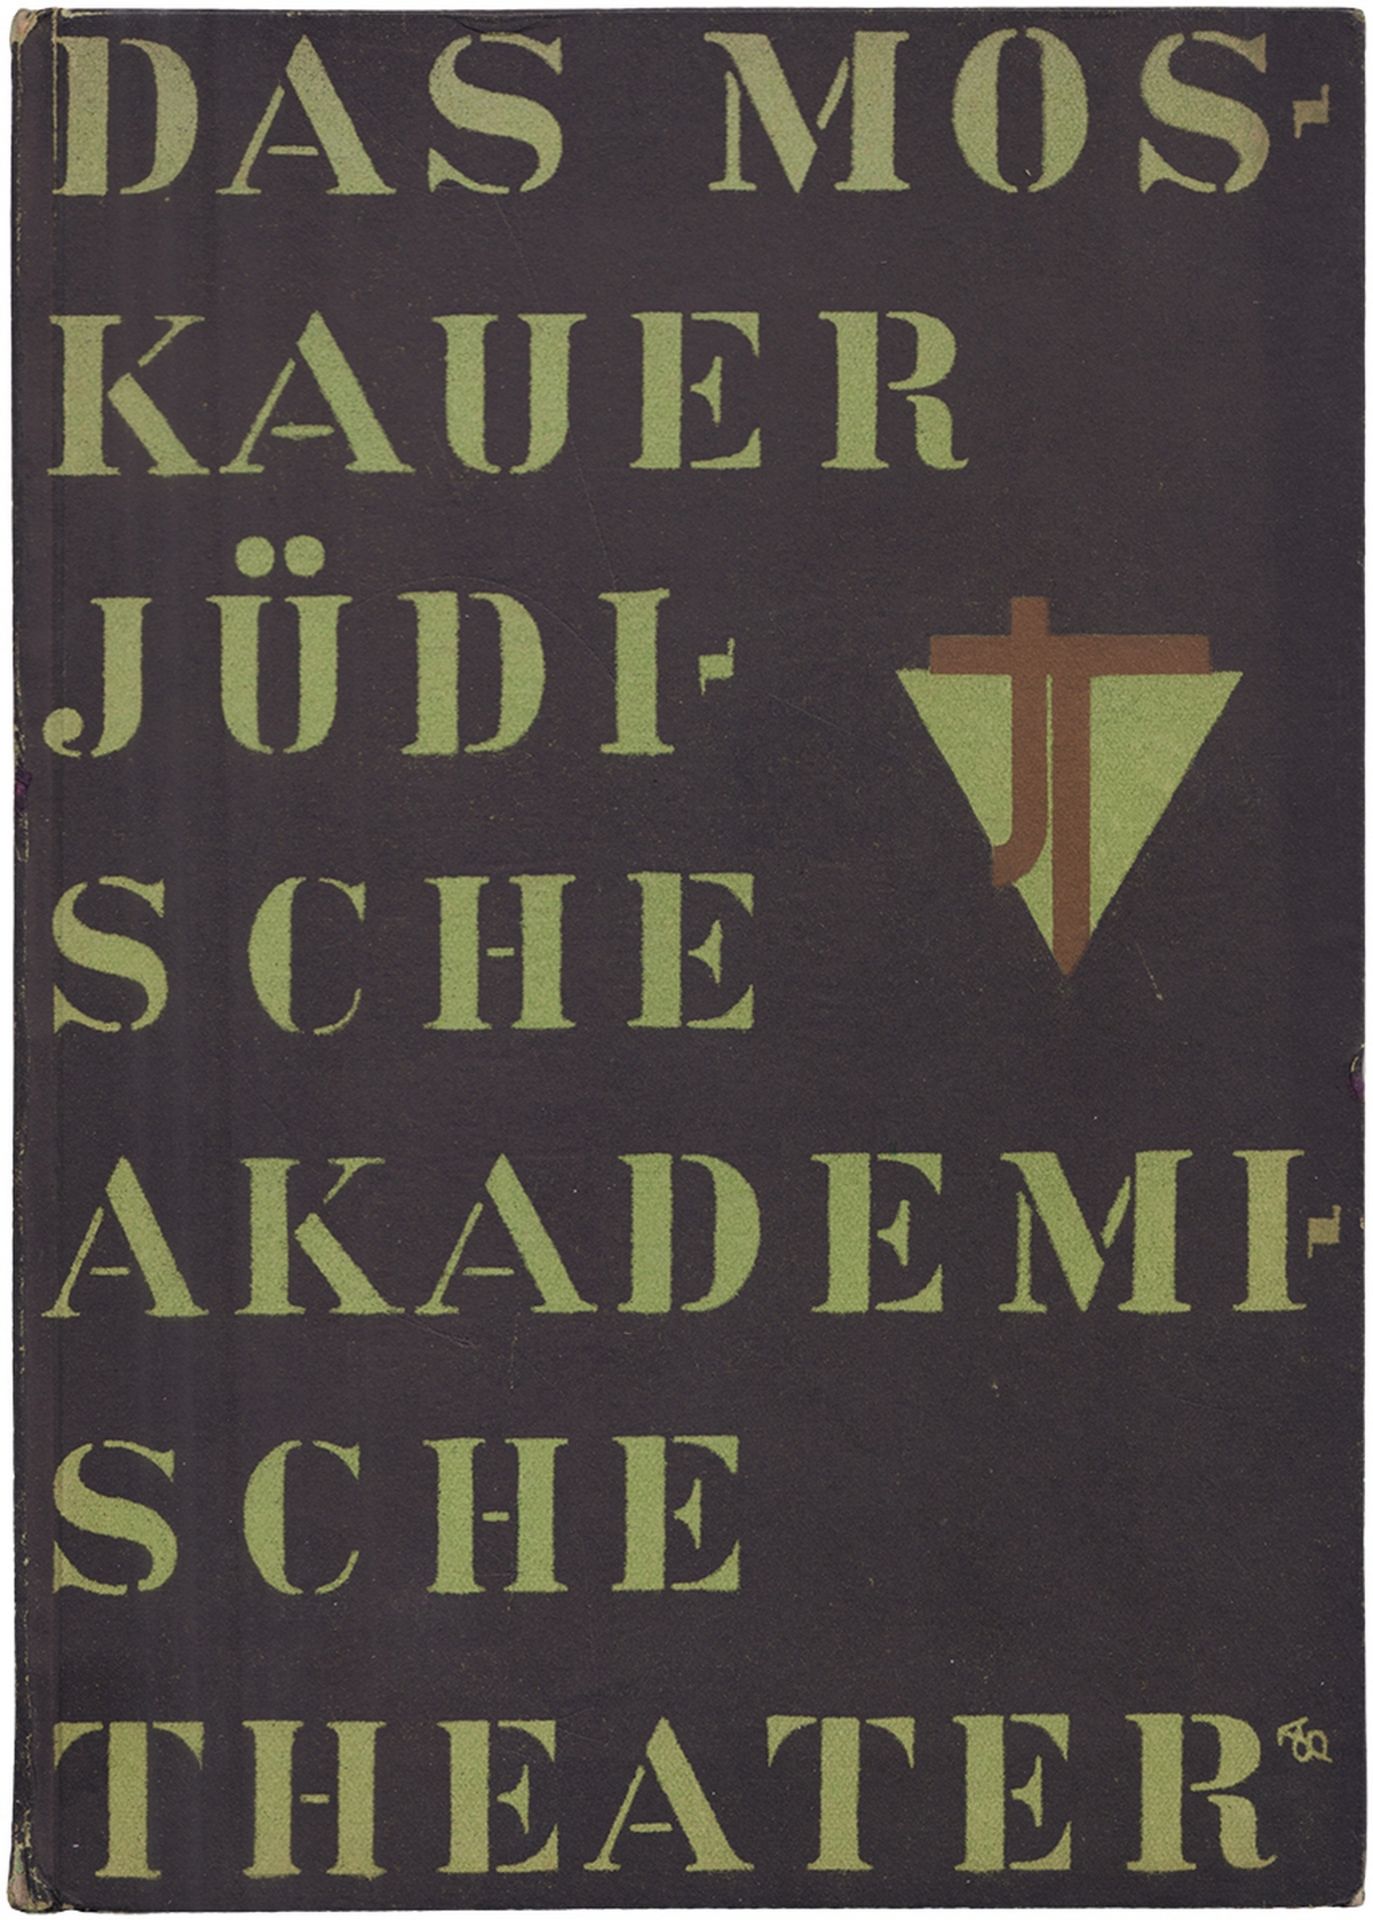 [Soviet art]. Das Moskauer j?dische akademische Theater. - Berlin: Die Schmiede, 1928. - 22, [2] pp.